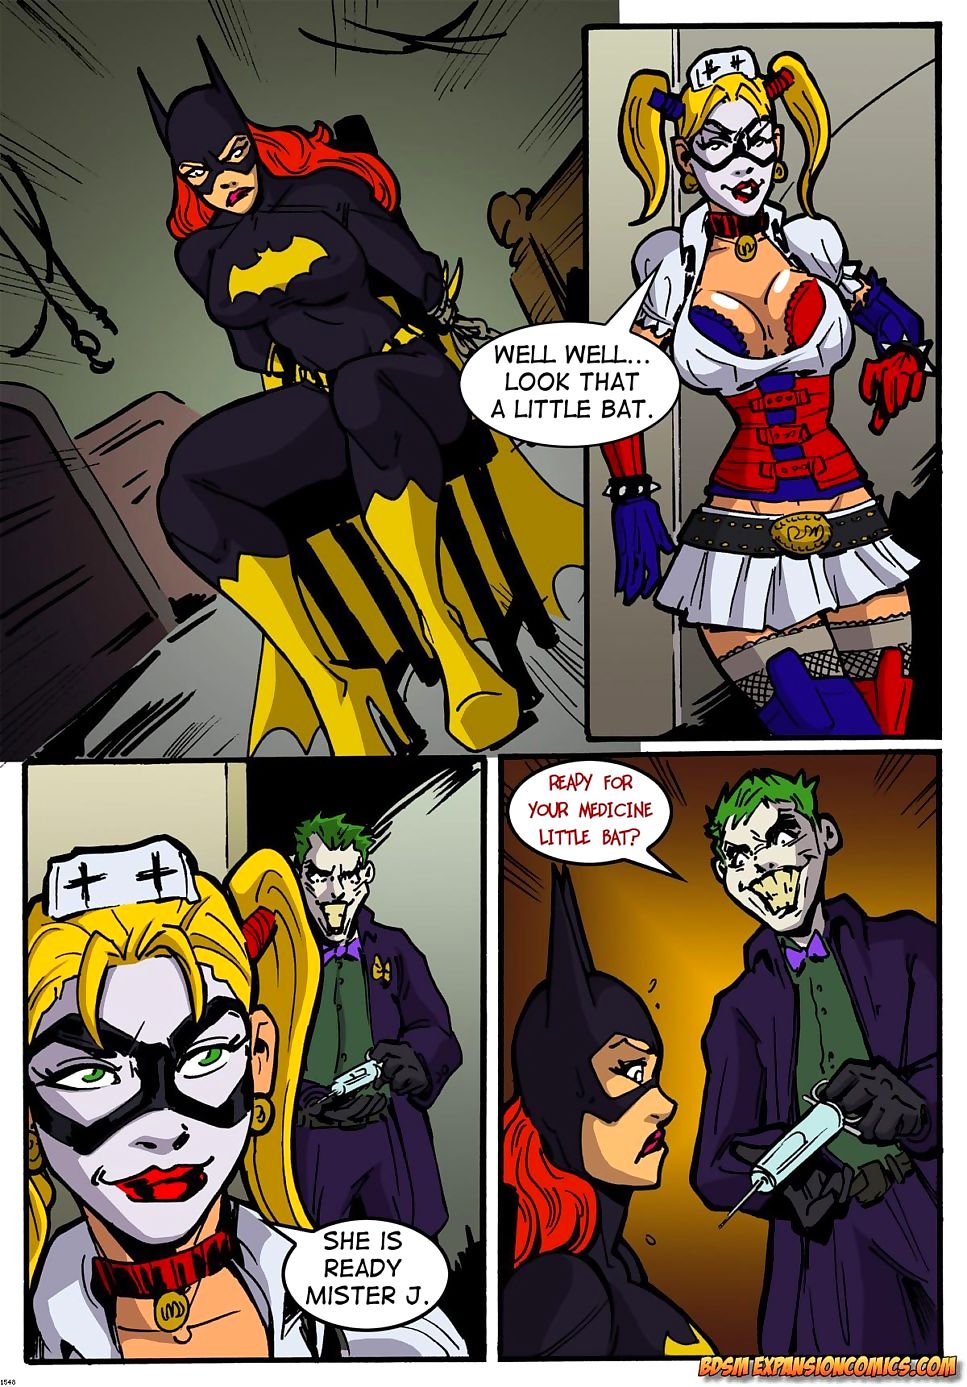 BDSM Expansion- Batgirls